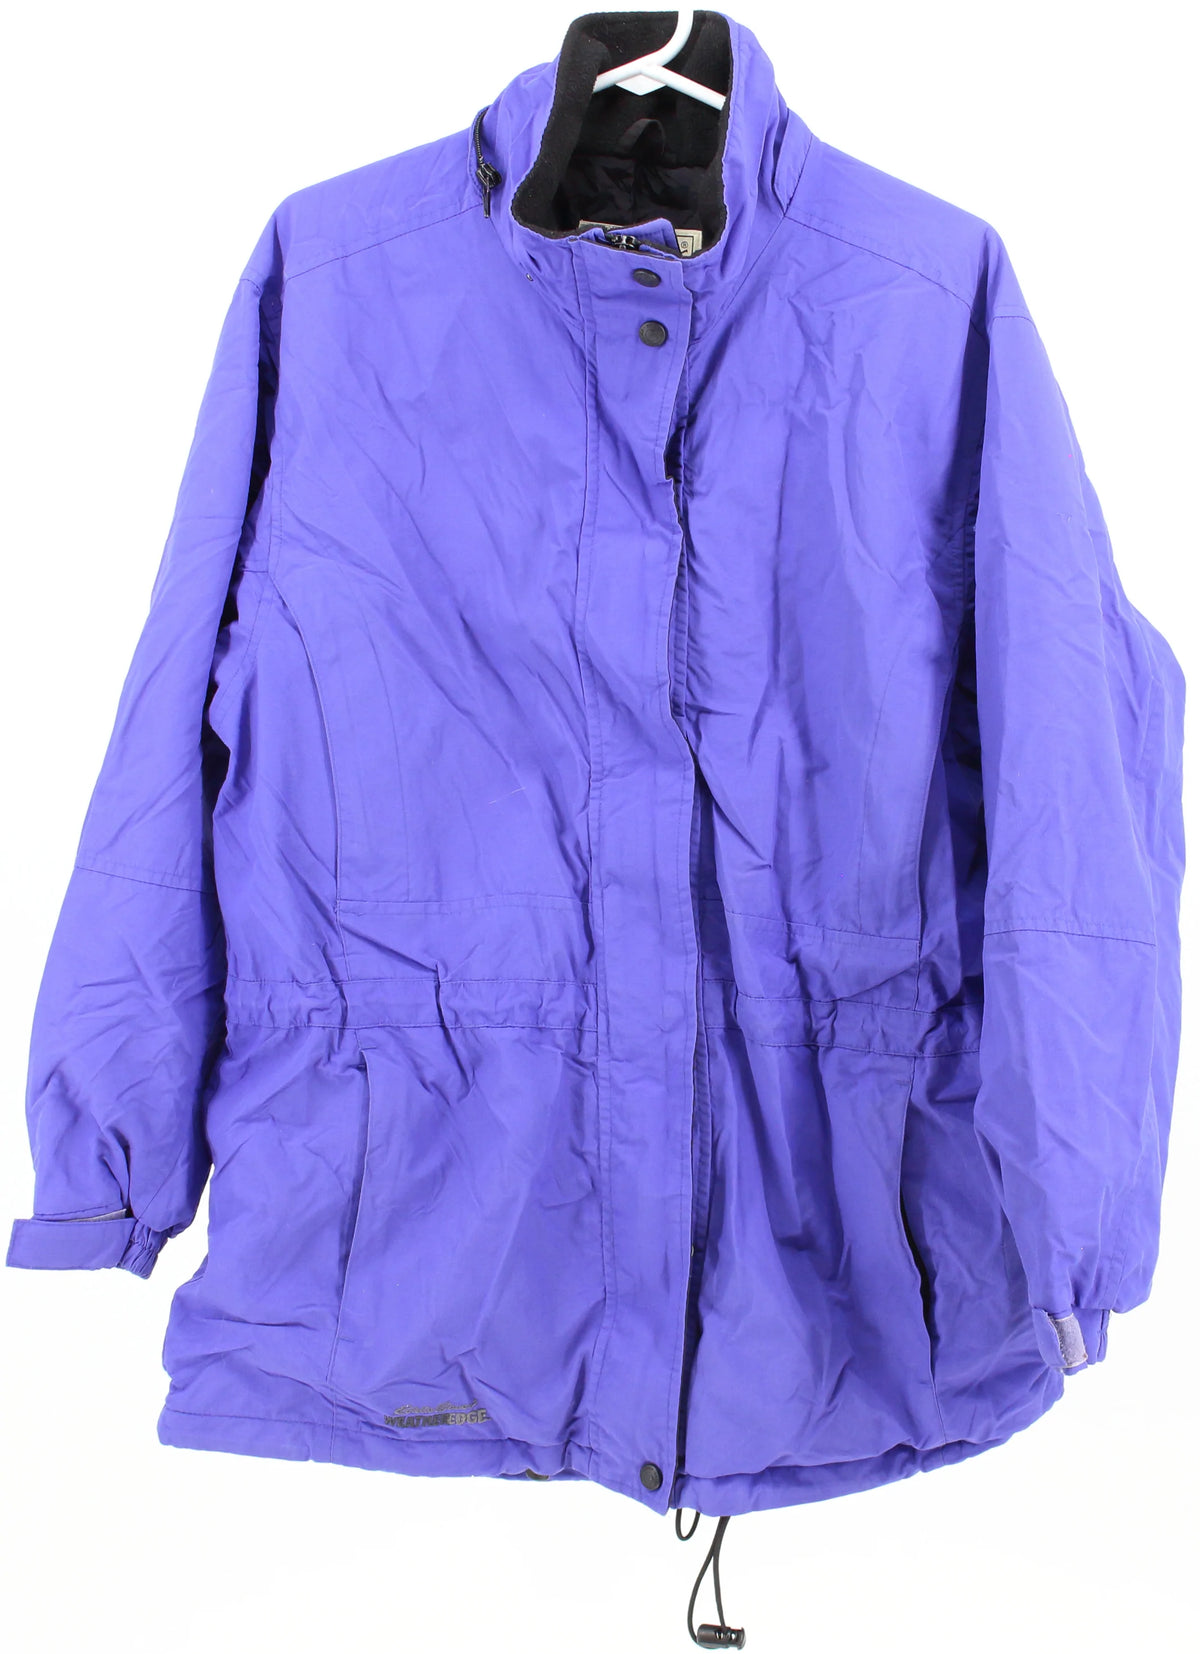 Eddie Bauer Purple Insulated Jacket